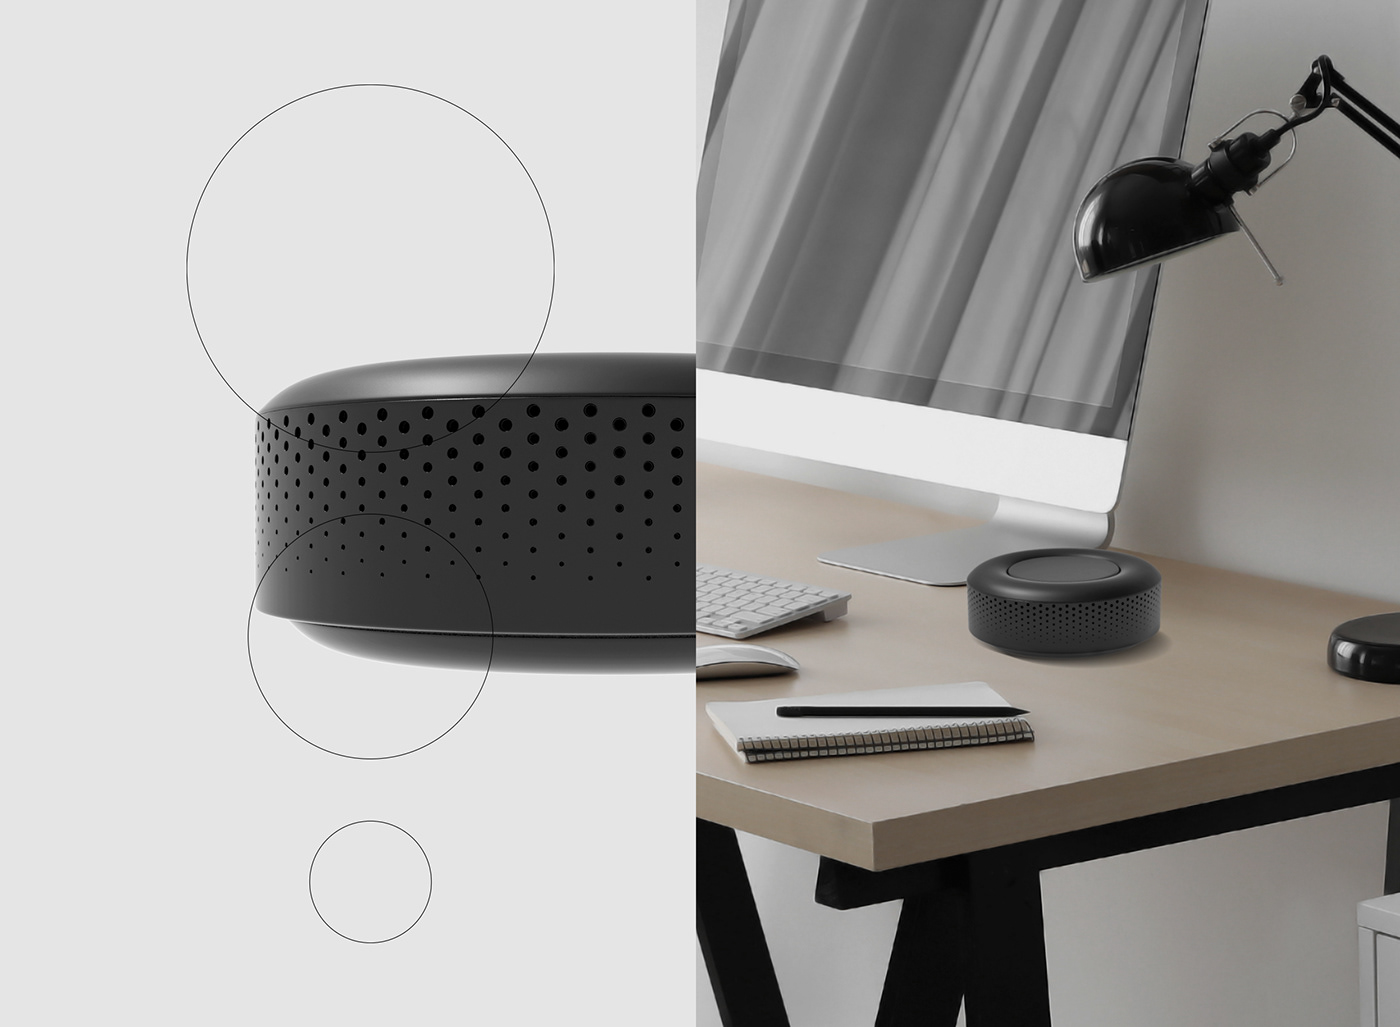 3D branding  design motion product sound speaker